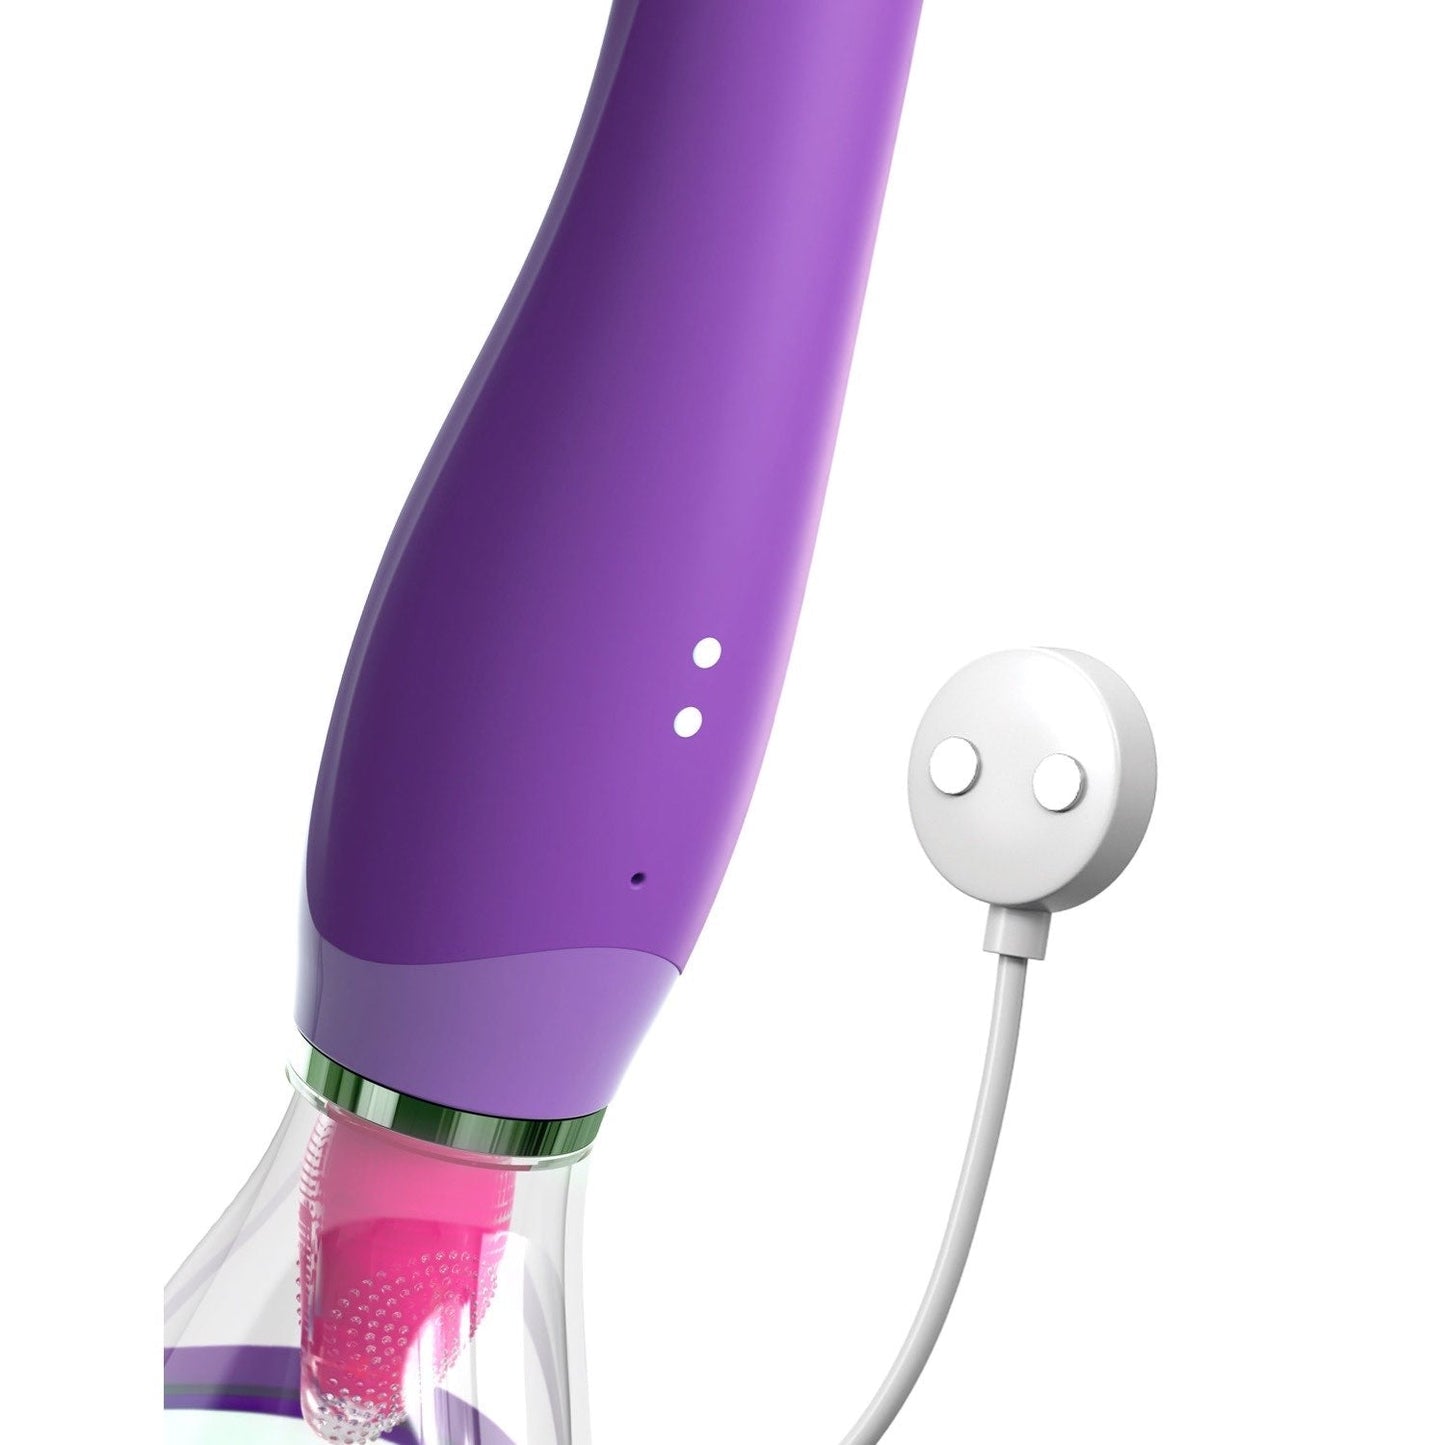 终极乐趣 - 紫色 USB 可充电吸吮和弹跳刺激器